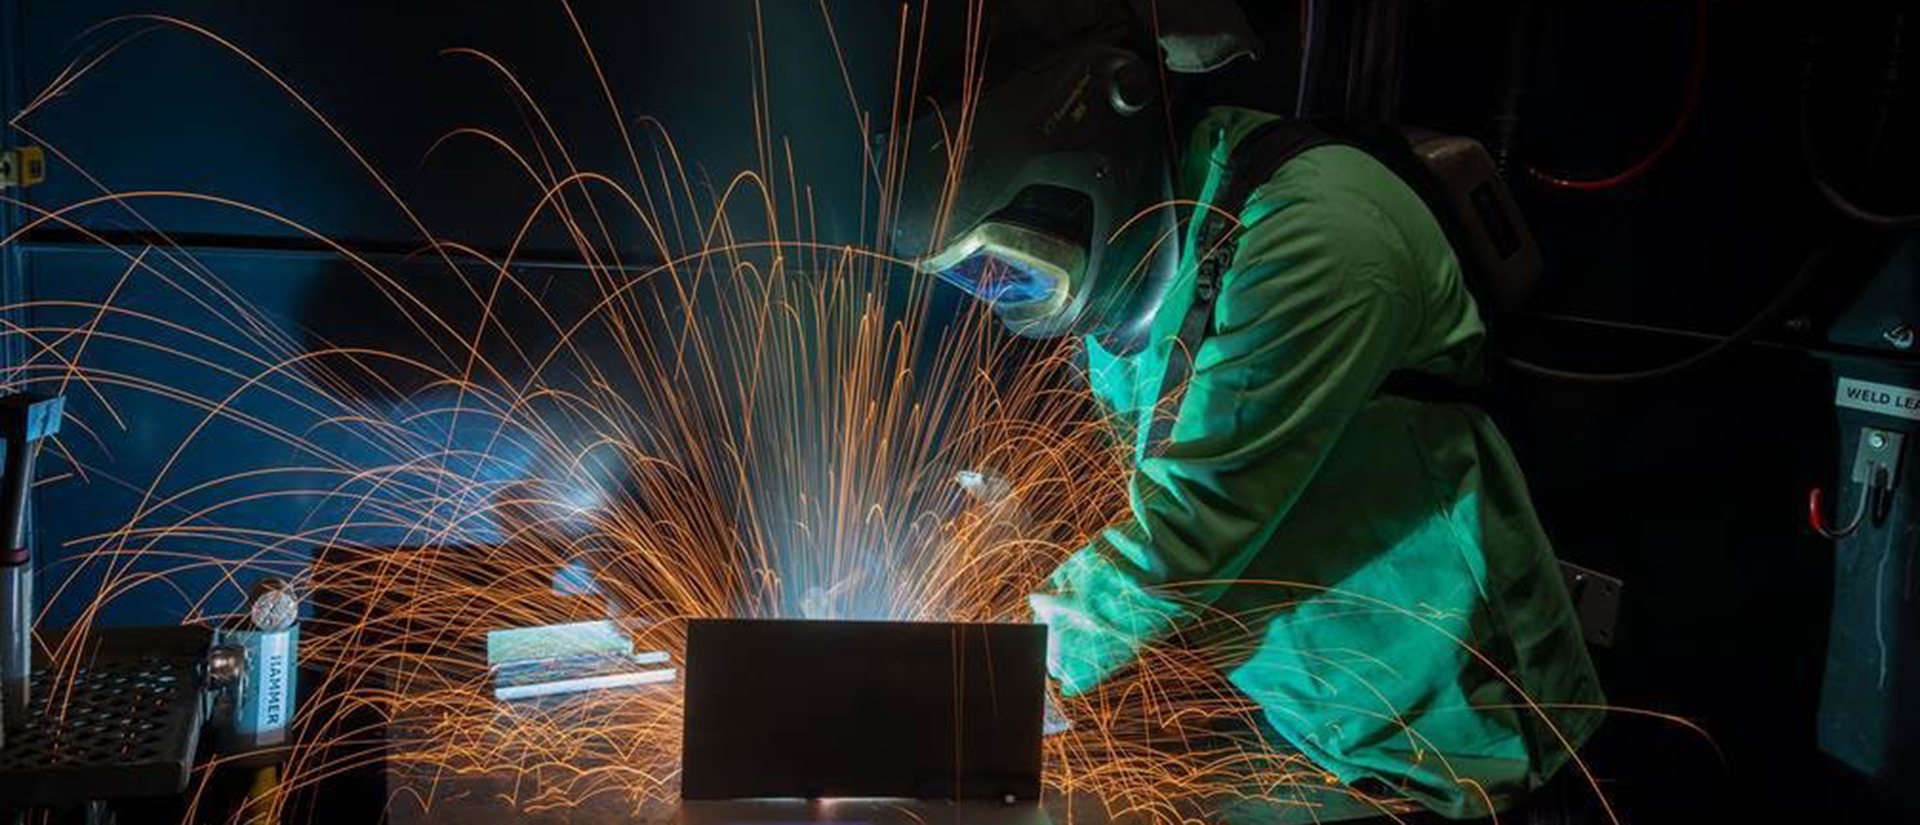 A registered apprentice welder